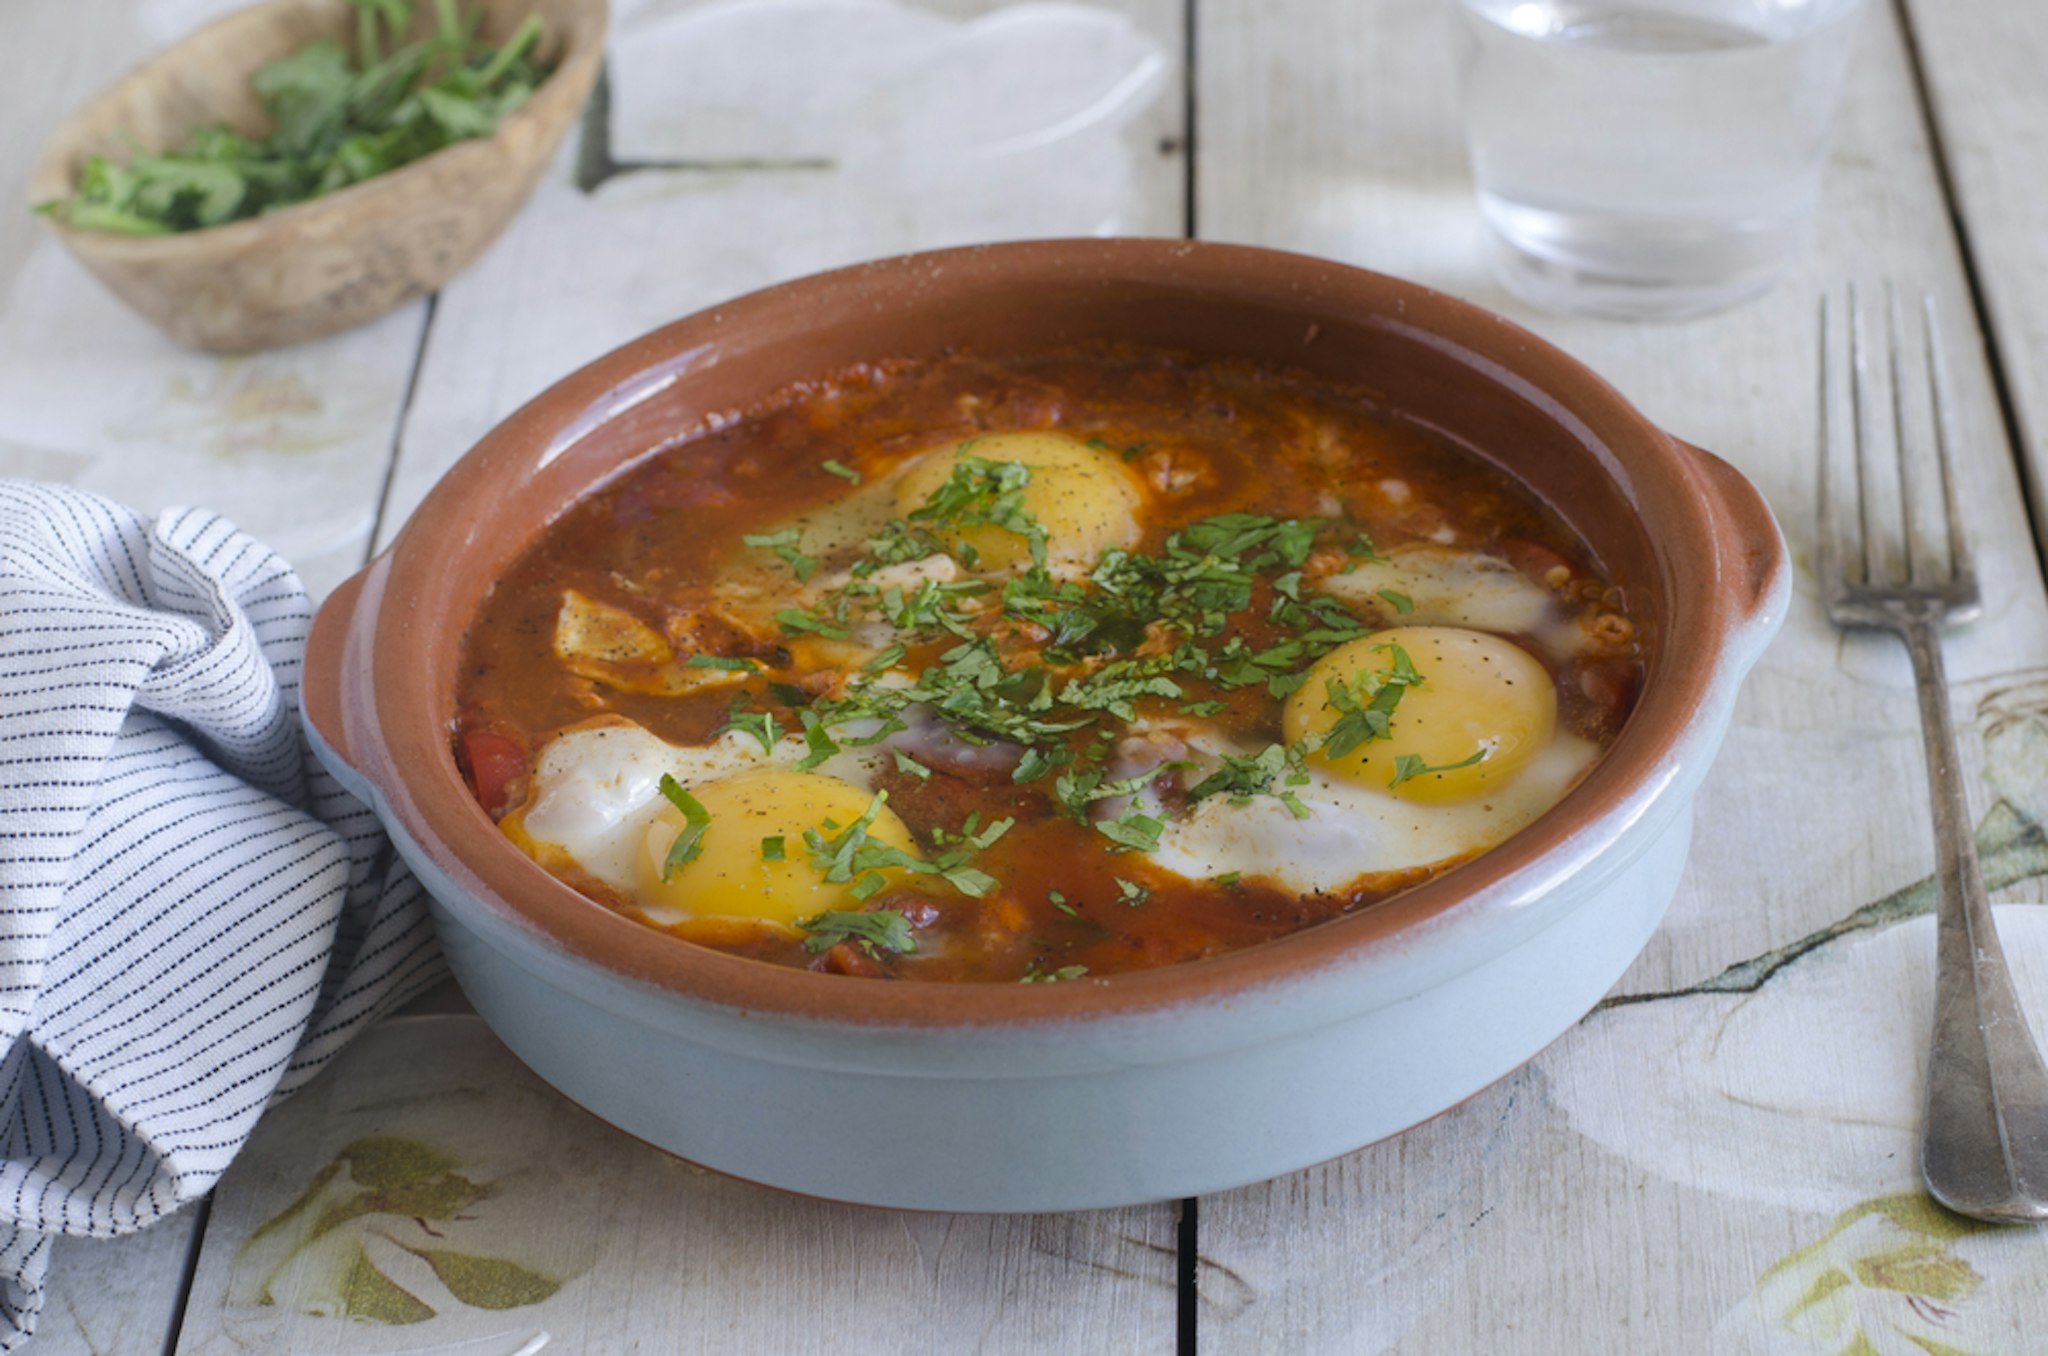 Moroccan Berber eggs/Shakshuka dish